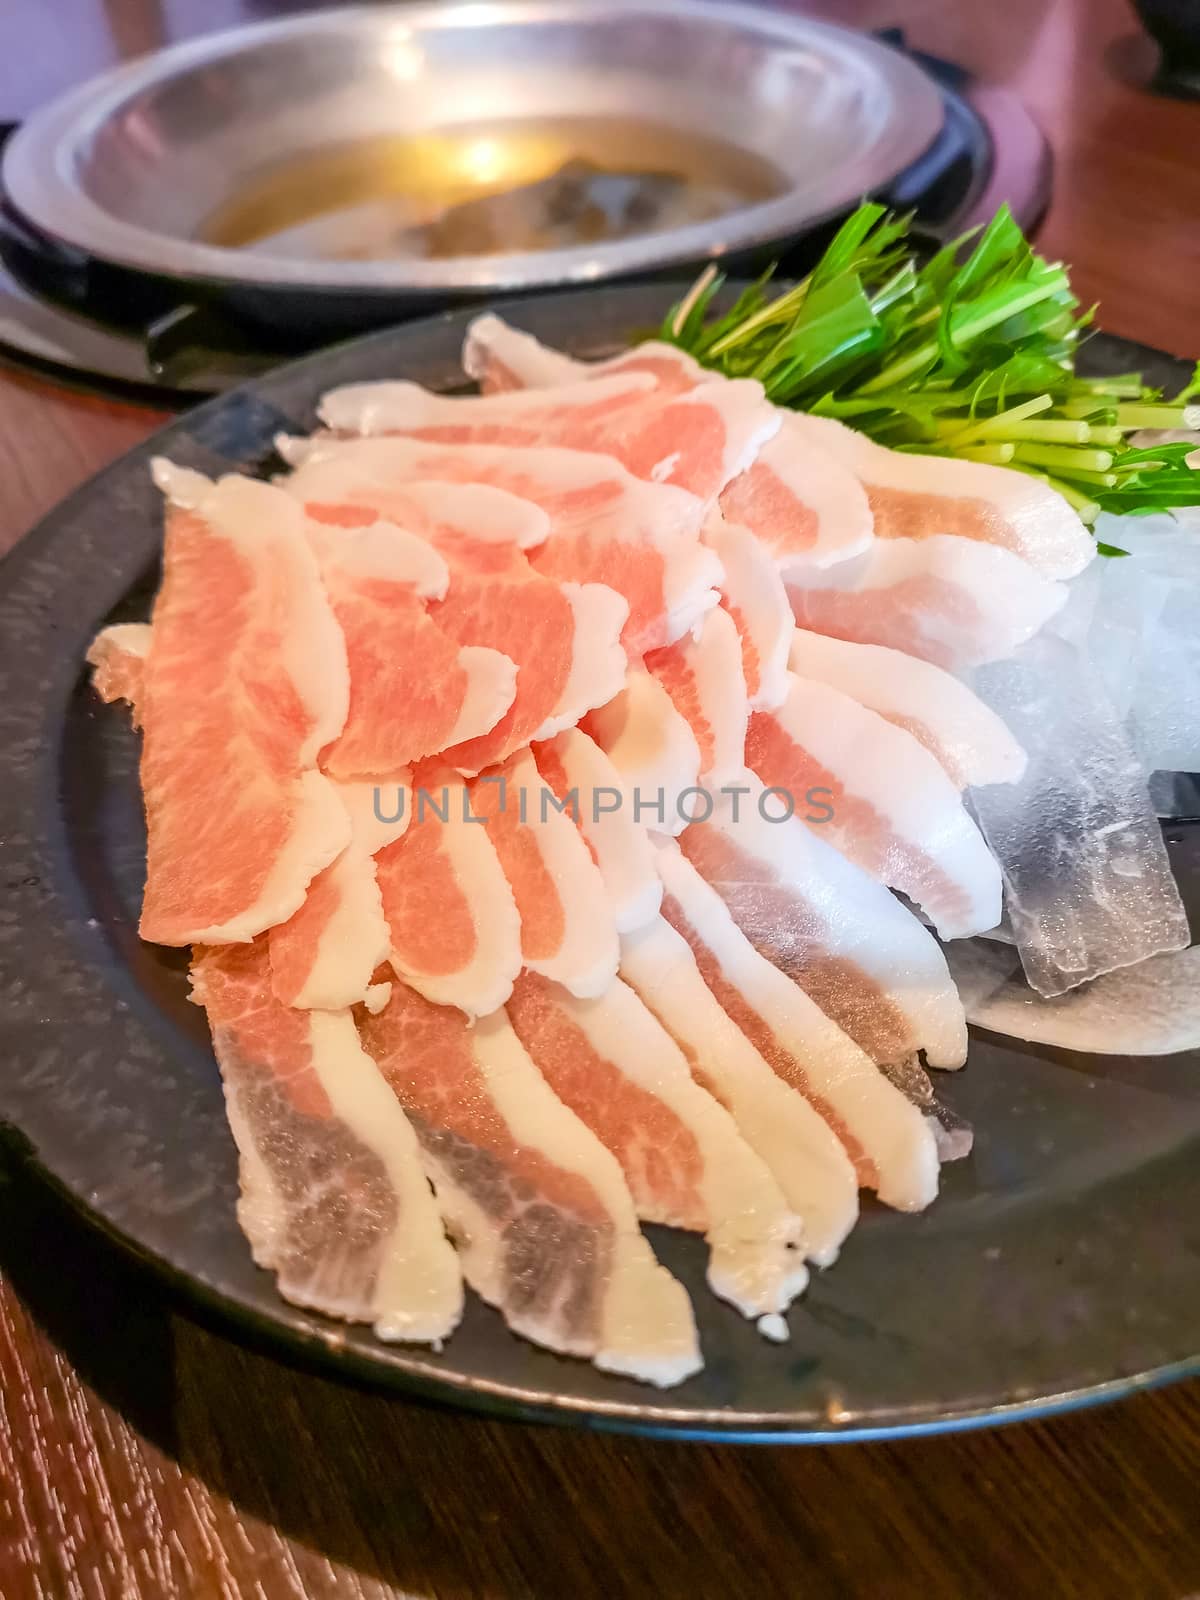 Okinawa style local pork shabu in Naha by f11photo